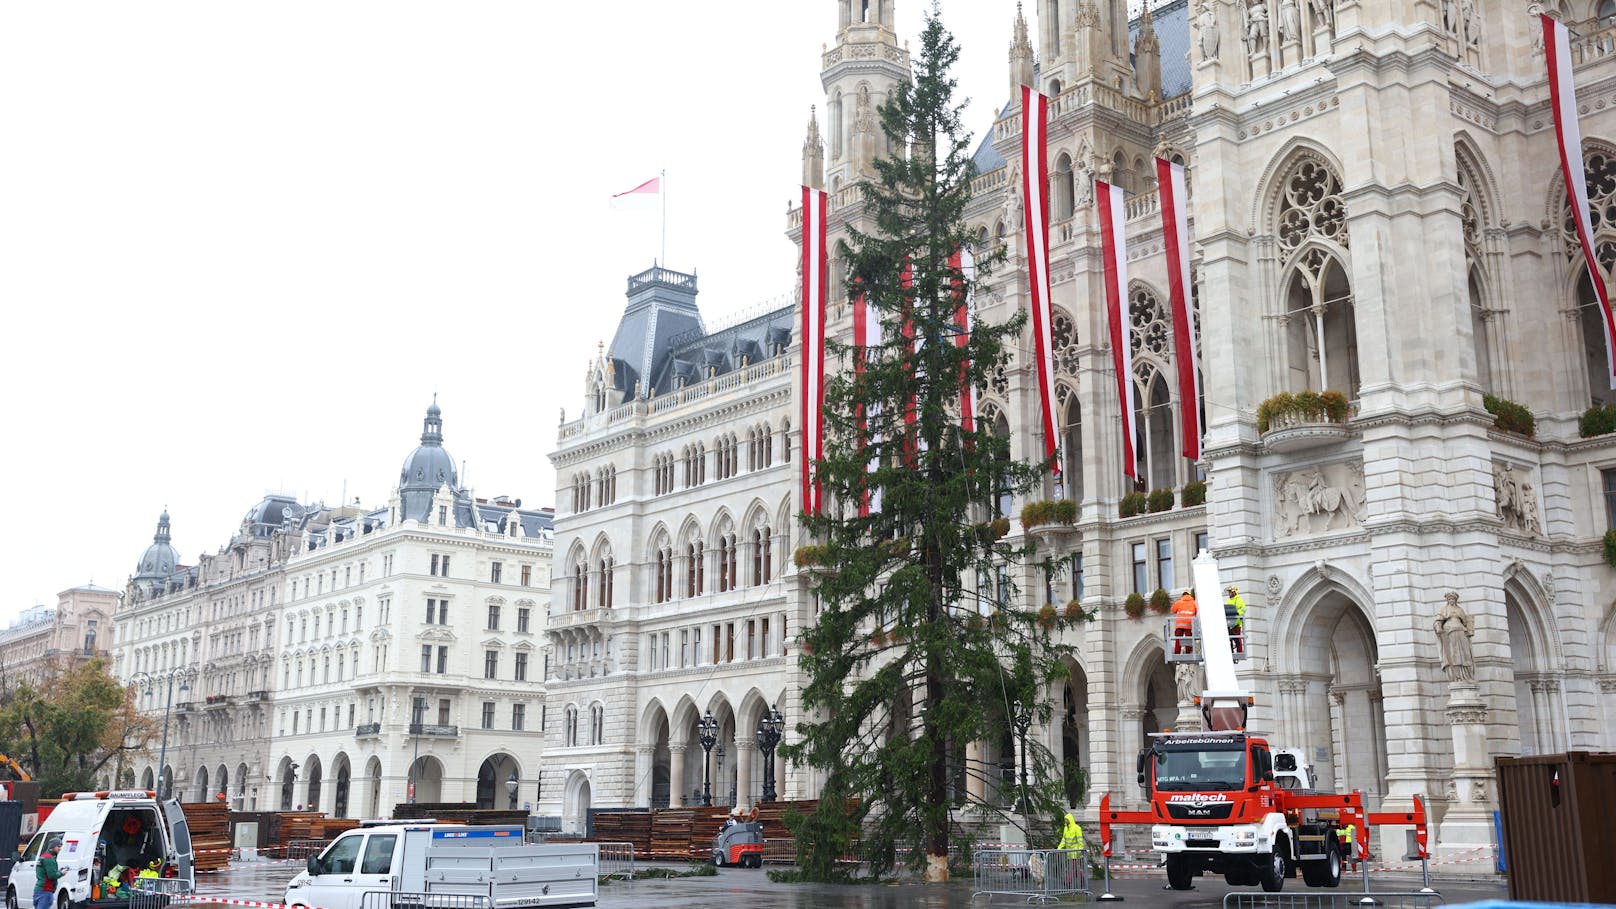 28 Meter hoch und 115 Jahre alt ist die Fichte, die heuer die Weihnachtszeit erleuchten wird.